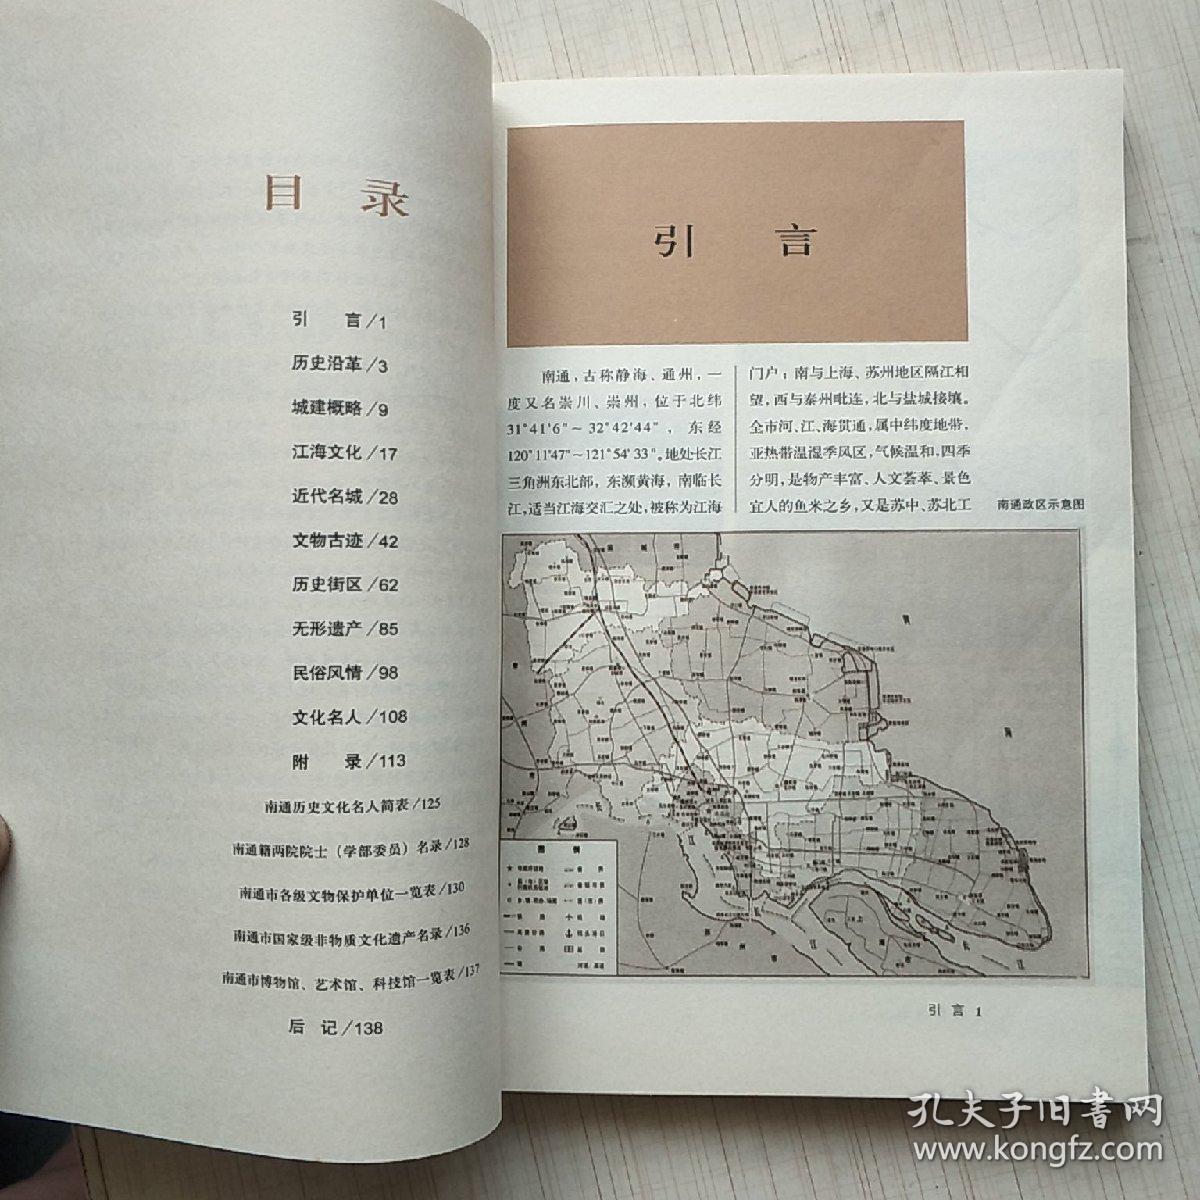 江海文明之光:南通历史文化概述